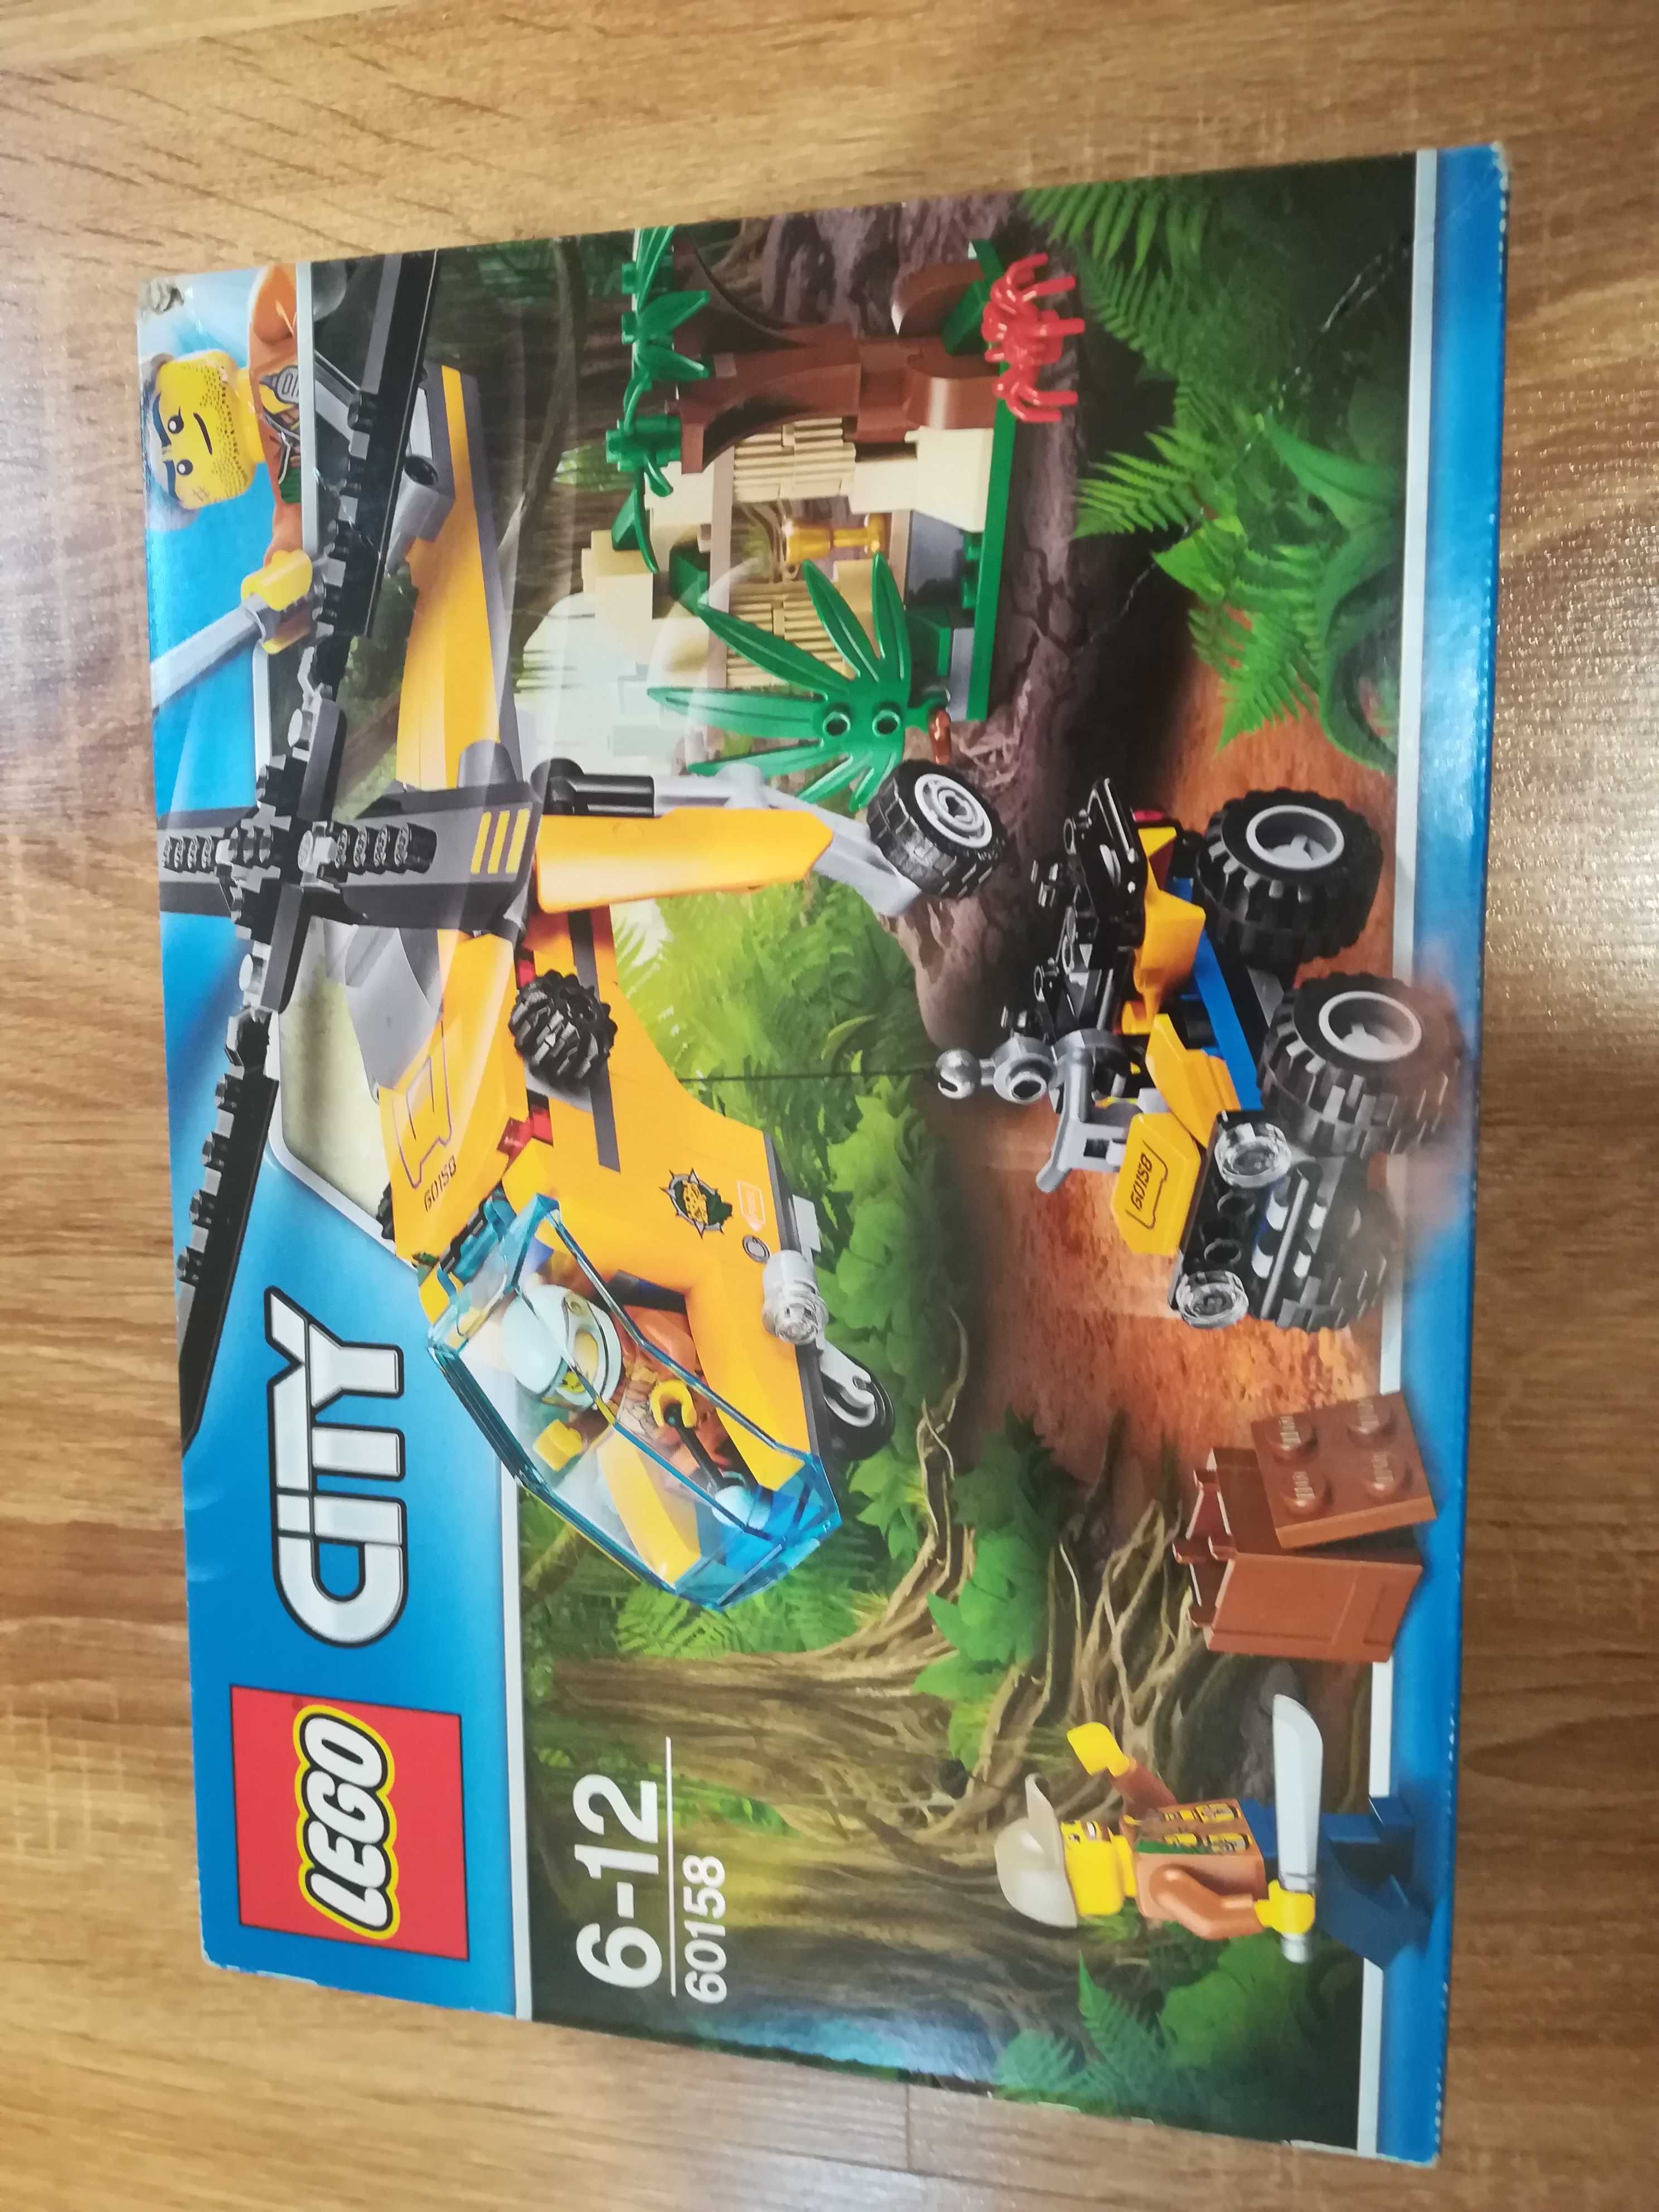 Lego 60158 helikopter transportowy w dżungli. nowe, nieotwierane